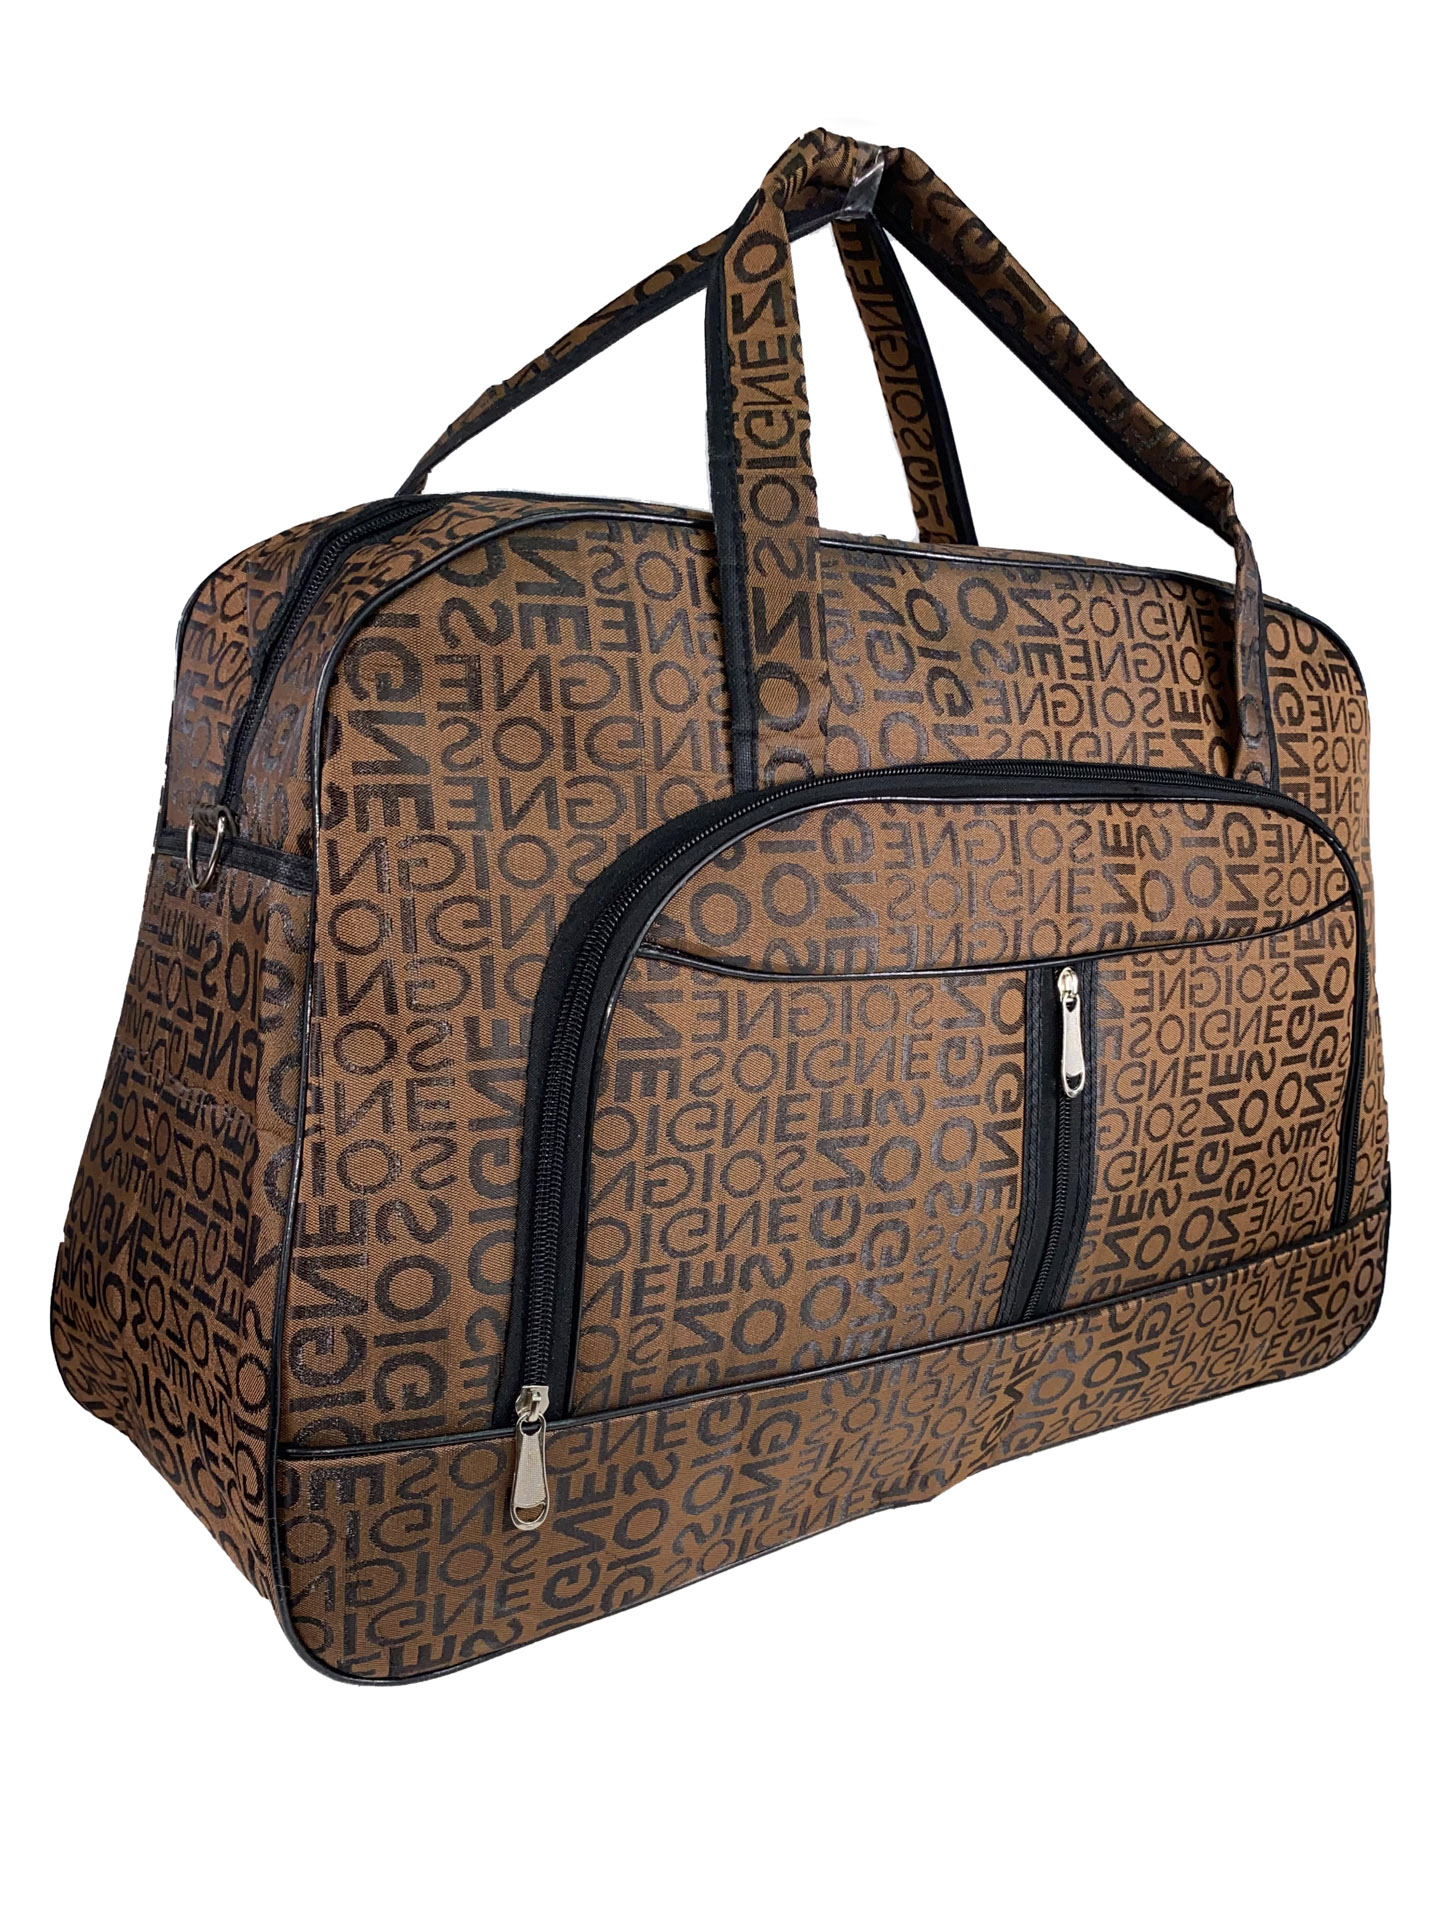 Женская дорожная сумка из текстиля с принтом, цвет коричневый